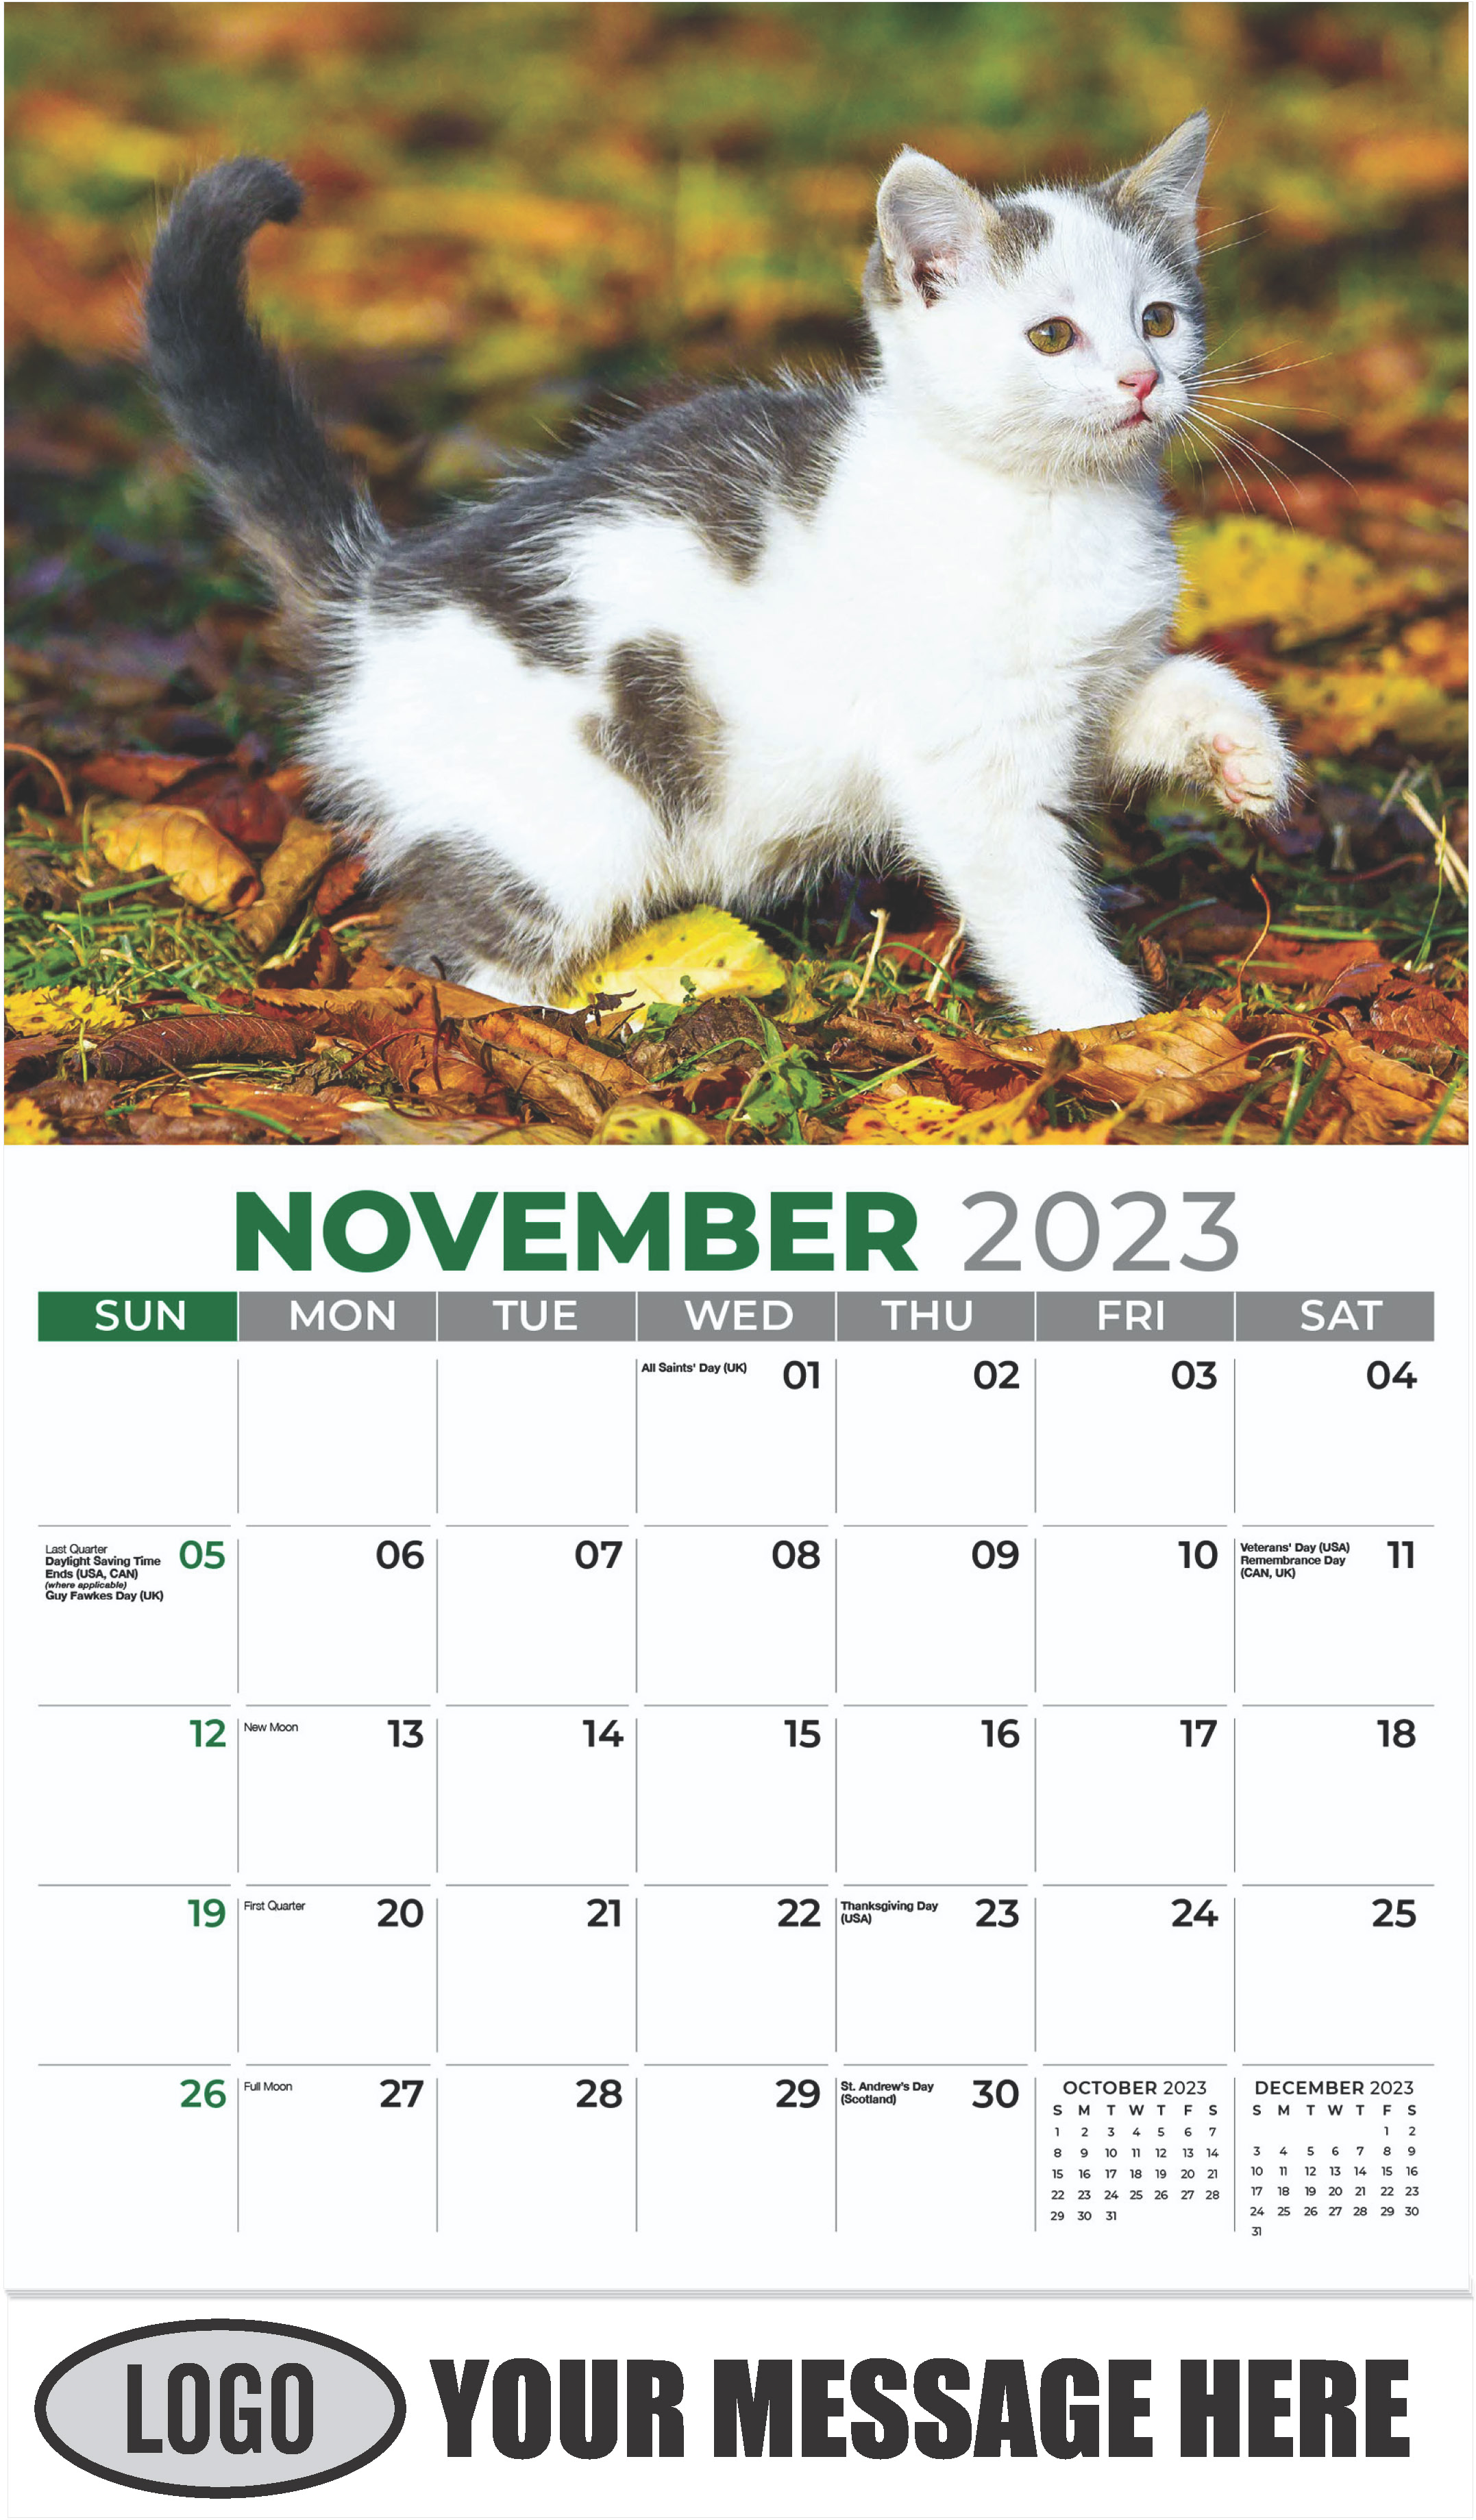 Tabby - November - Kittens 2023 Promotional Calendar